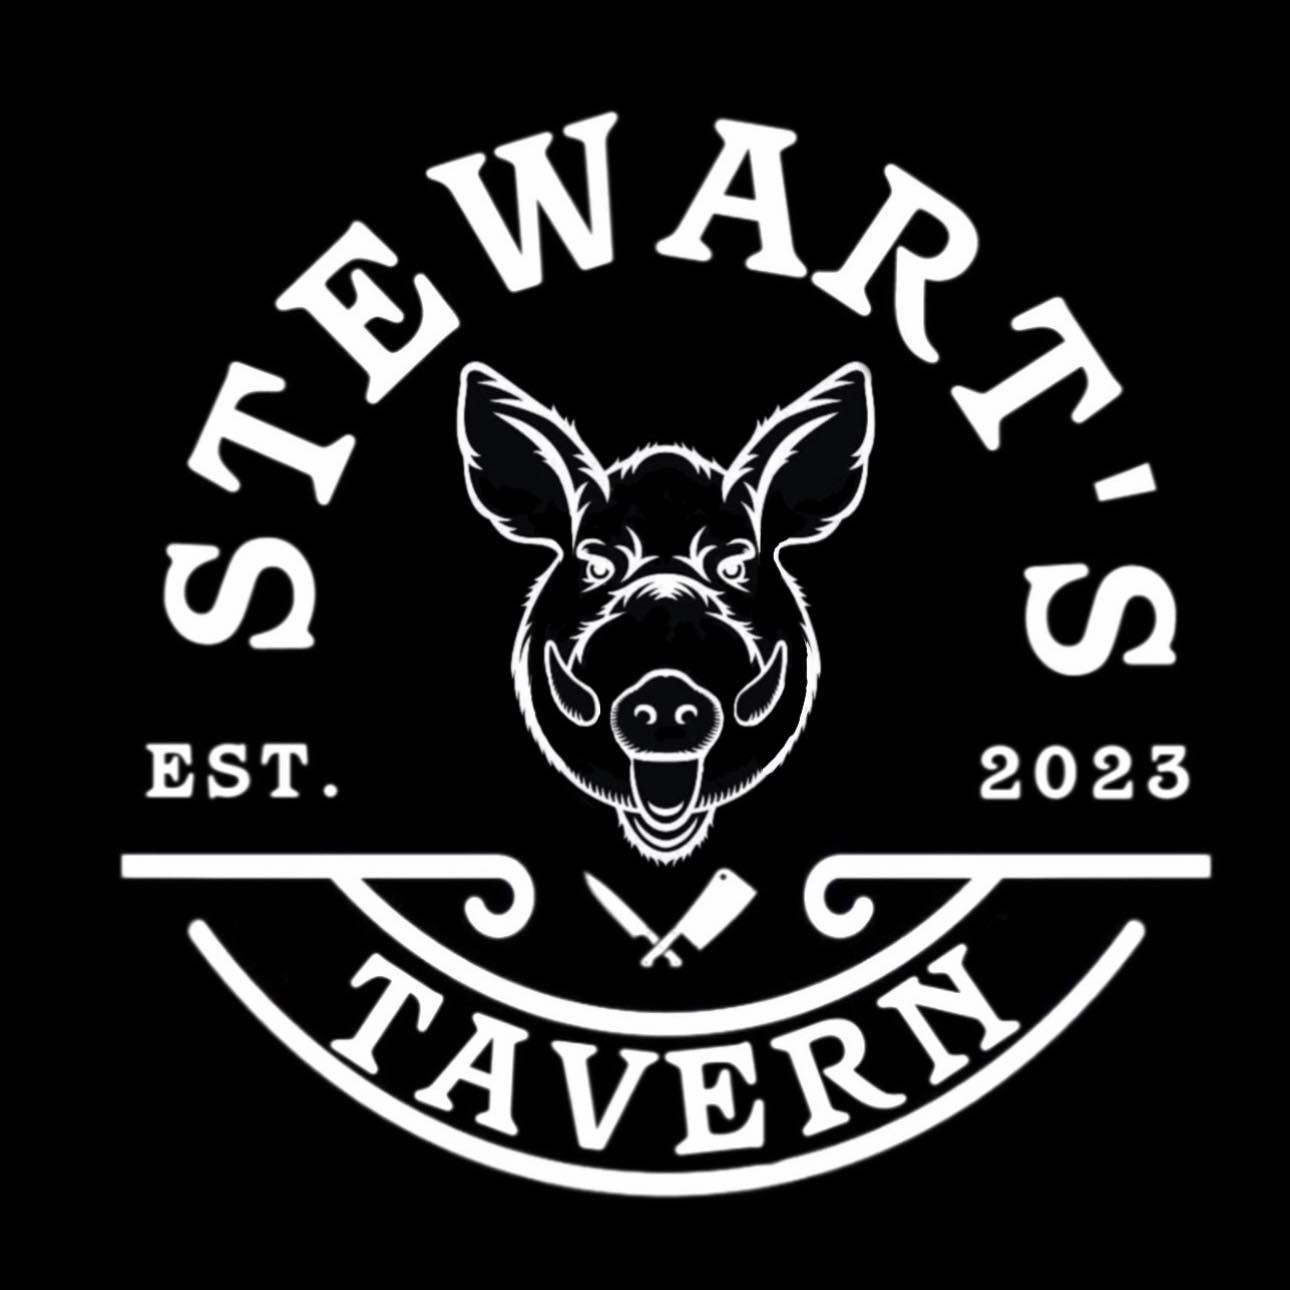 Stewart’s Tavern